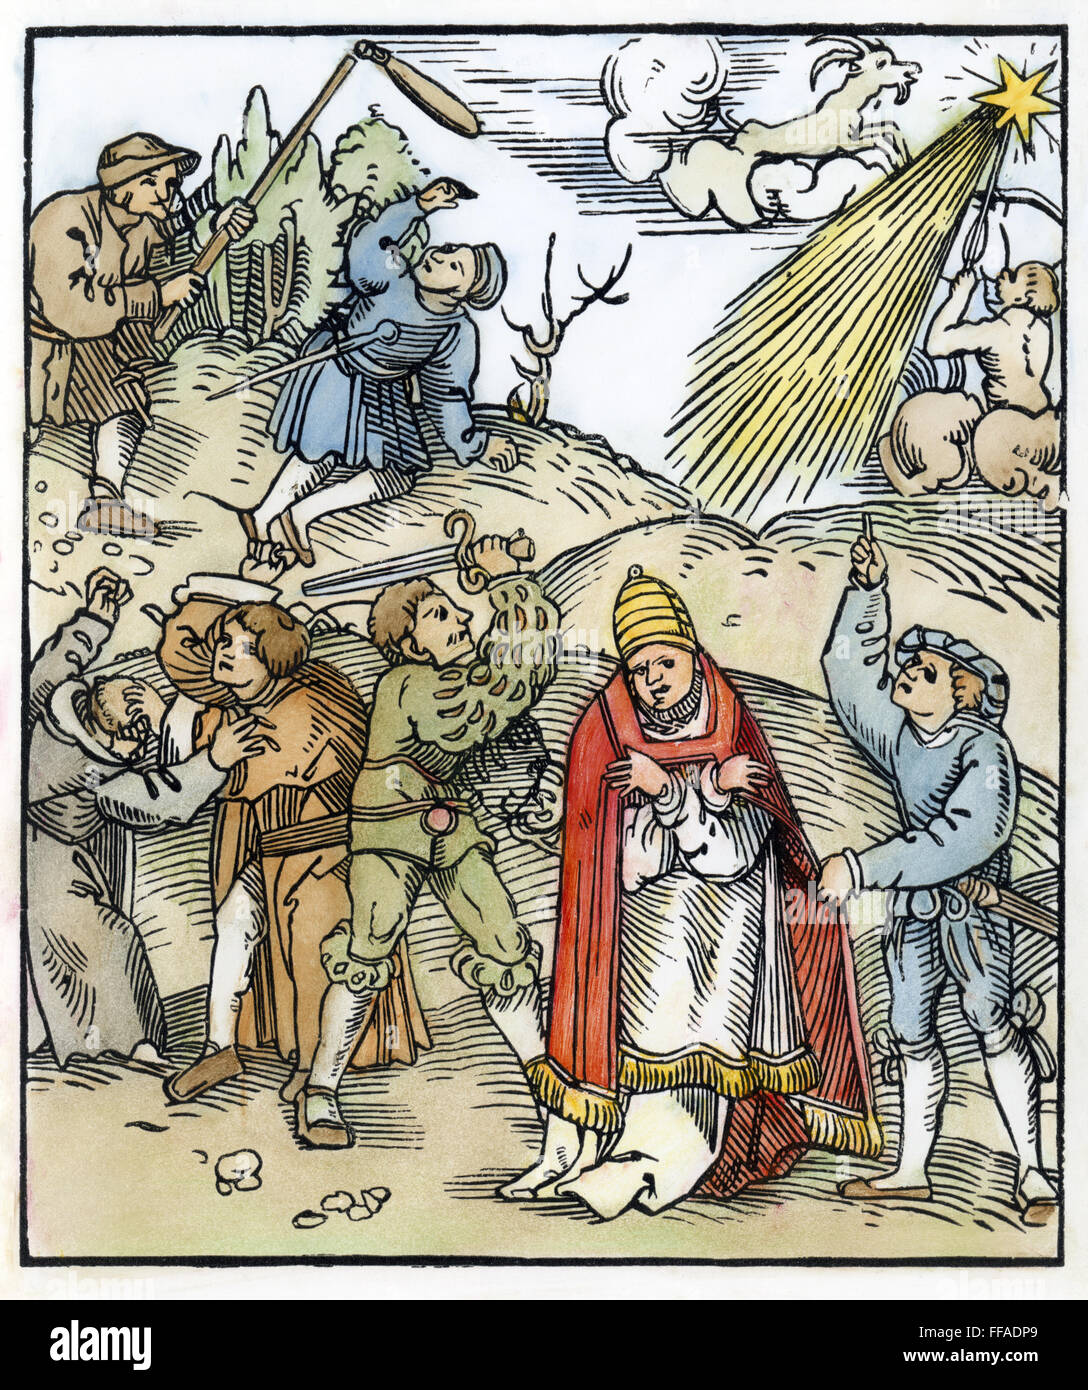 Germania: i contadini la guerra. /NPeasants combattendo i monaci e il Papa. Xilografia, Tedesco, 1524. Foto Stock